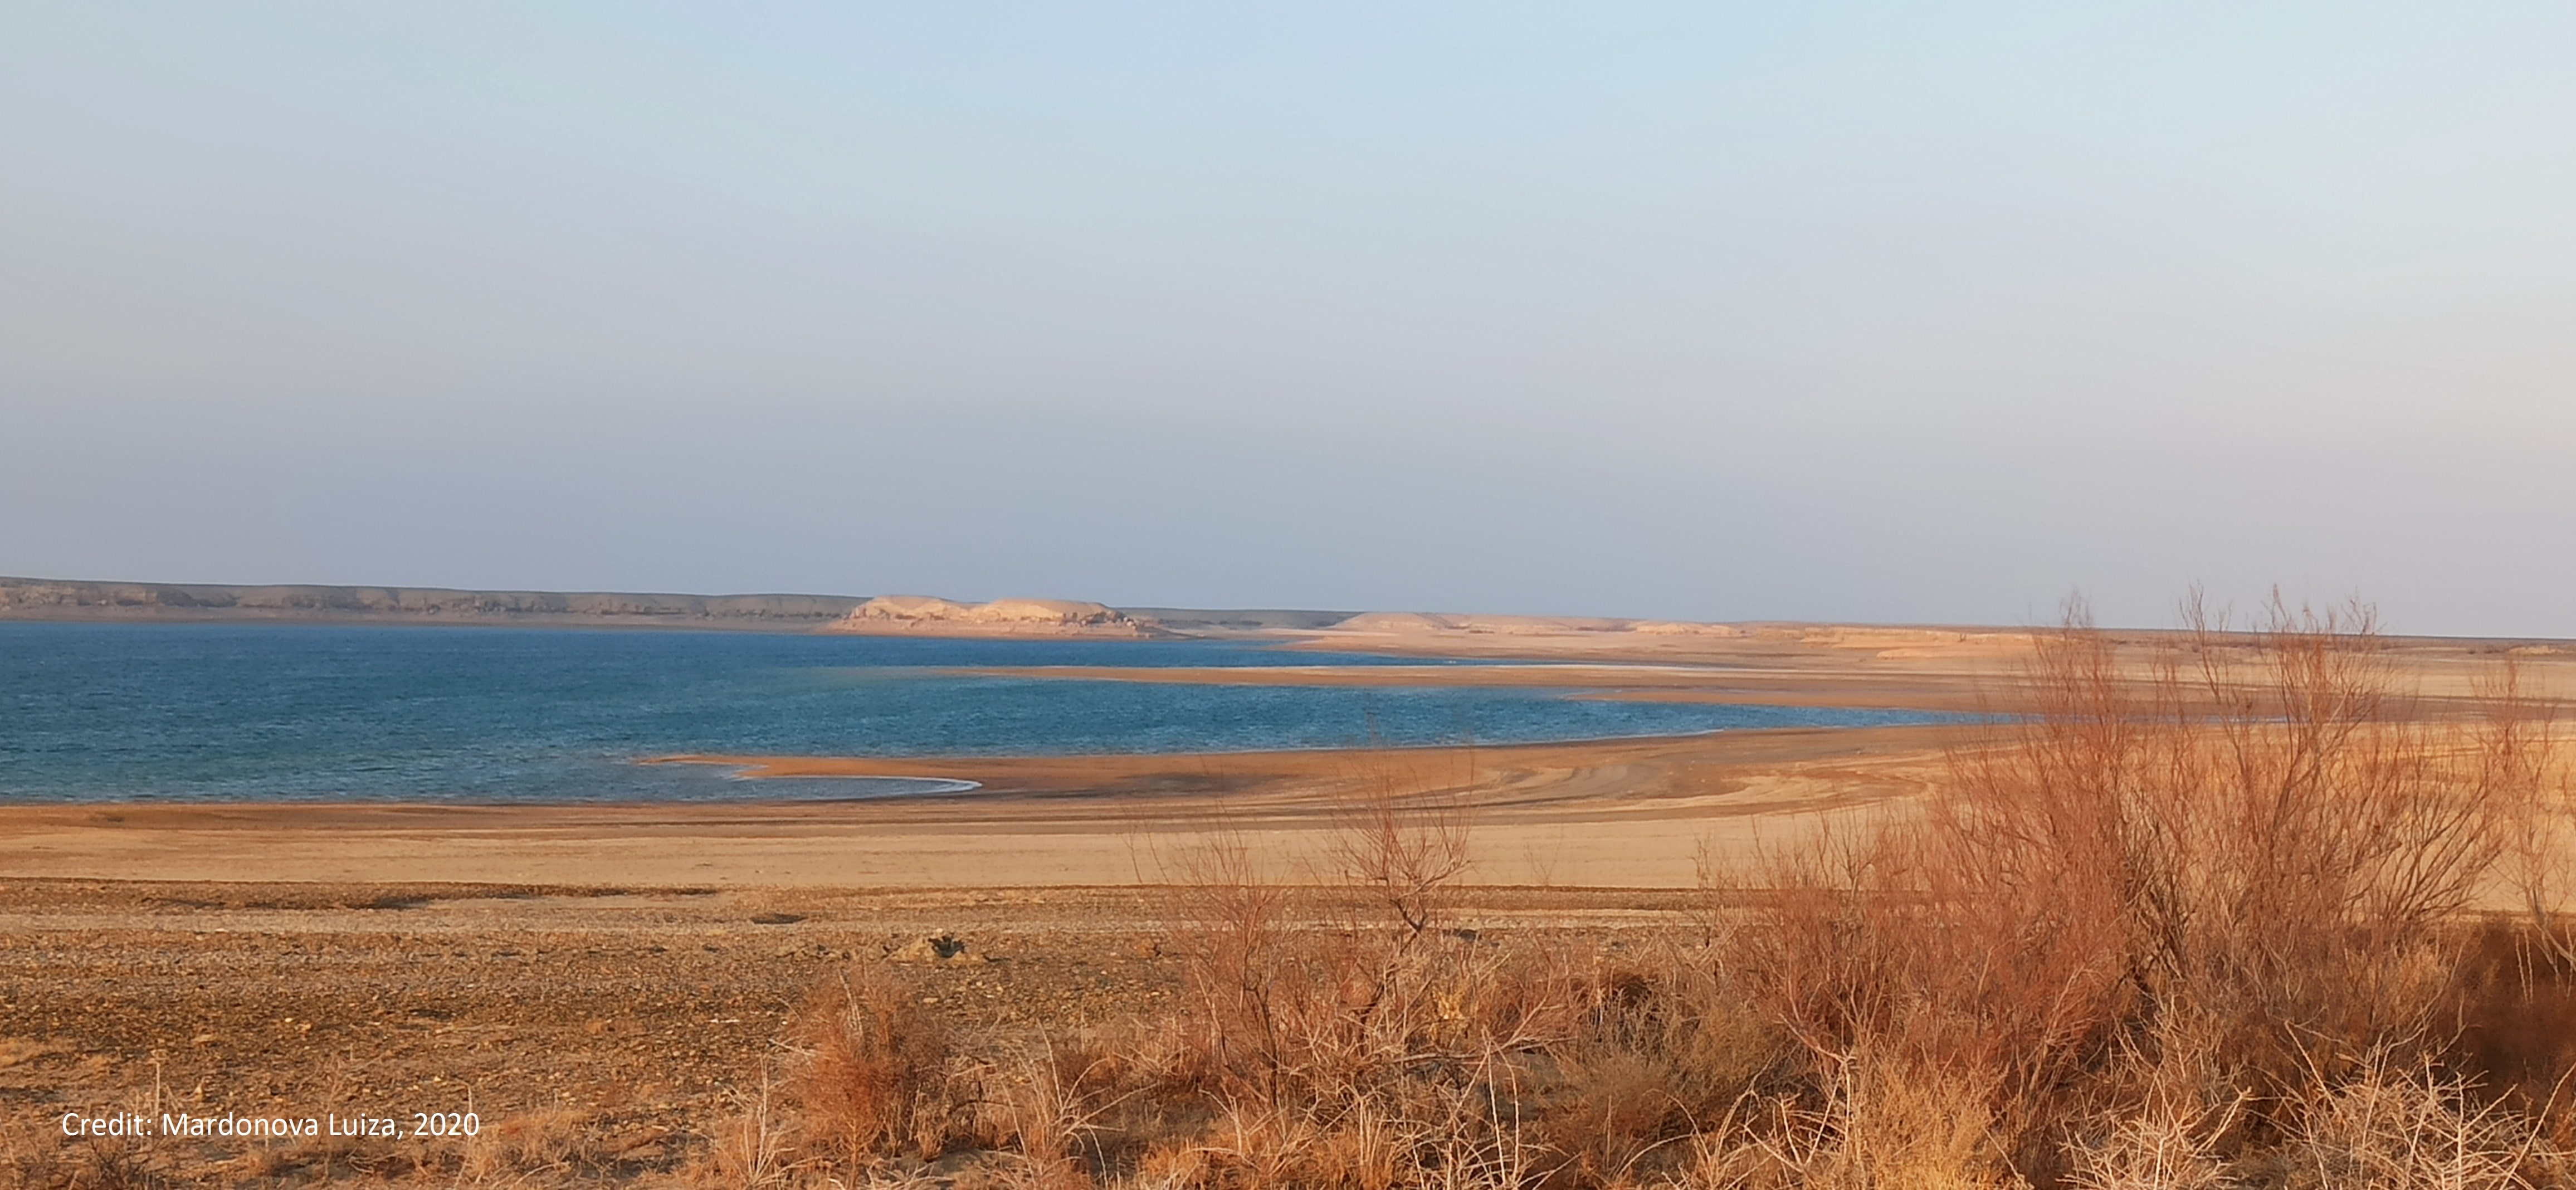 Тудакульское и Куймазарское водохранилища, расположенные в Узбекистане, включены в список РАМСАР по охране водно-болотных угодий международного значения. 